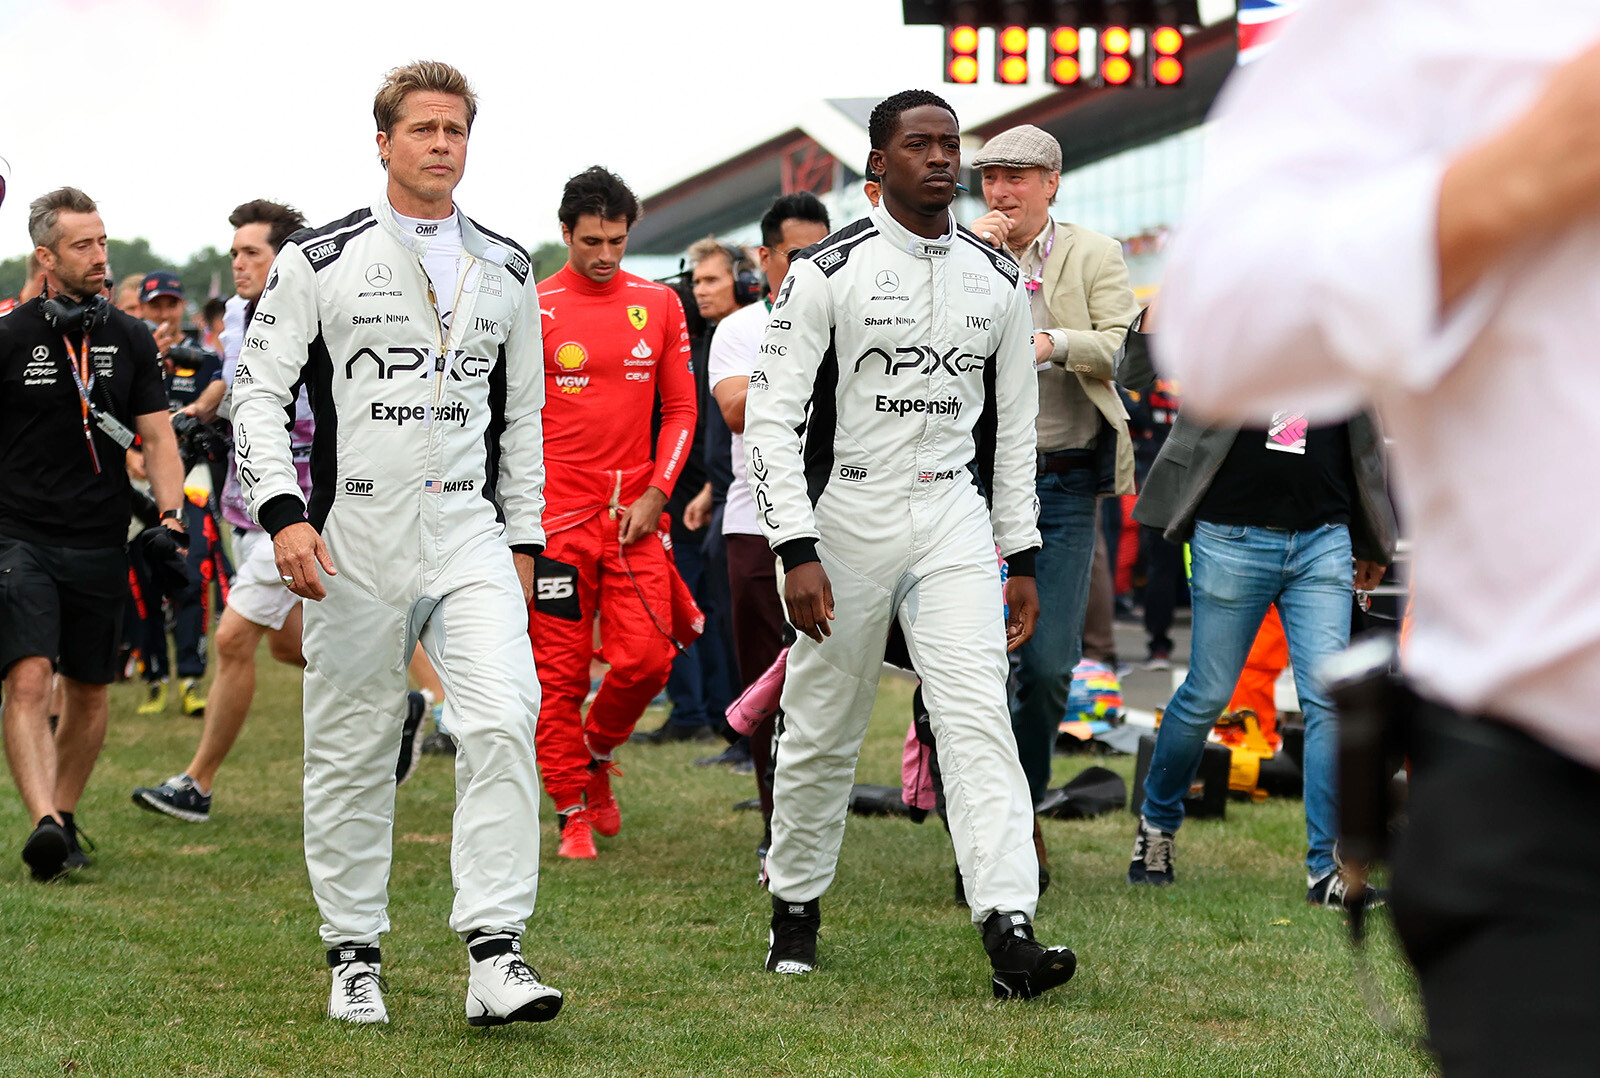 Брэд Питт и Дамсон Идрис на съемках фильма о Формуле-1 во время Гран-при Великобритании 2023 года в Сильверстоуне, Таучестер.&nbsp;Дата фото: воскресенье, 9 июля 2023 г.